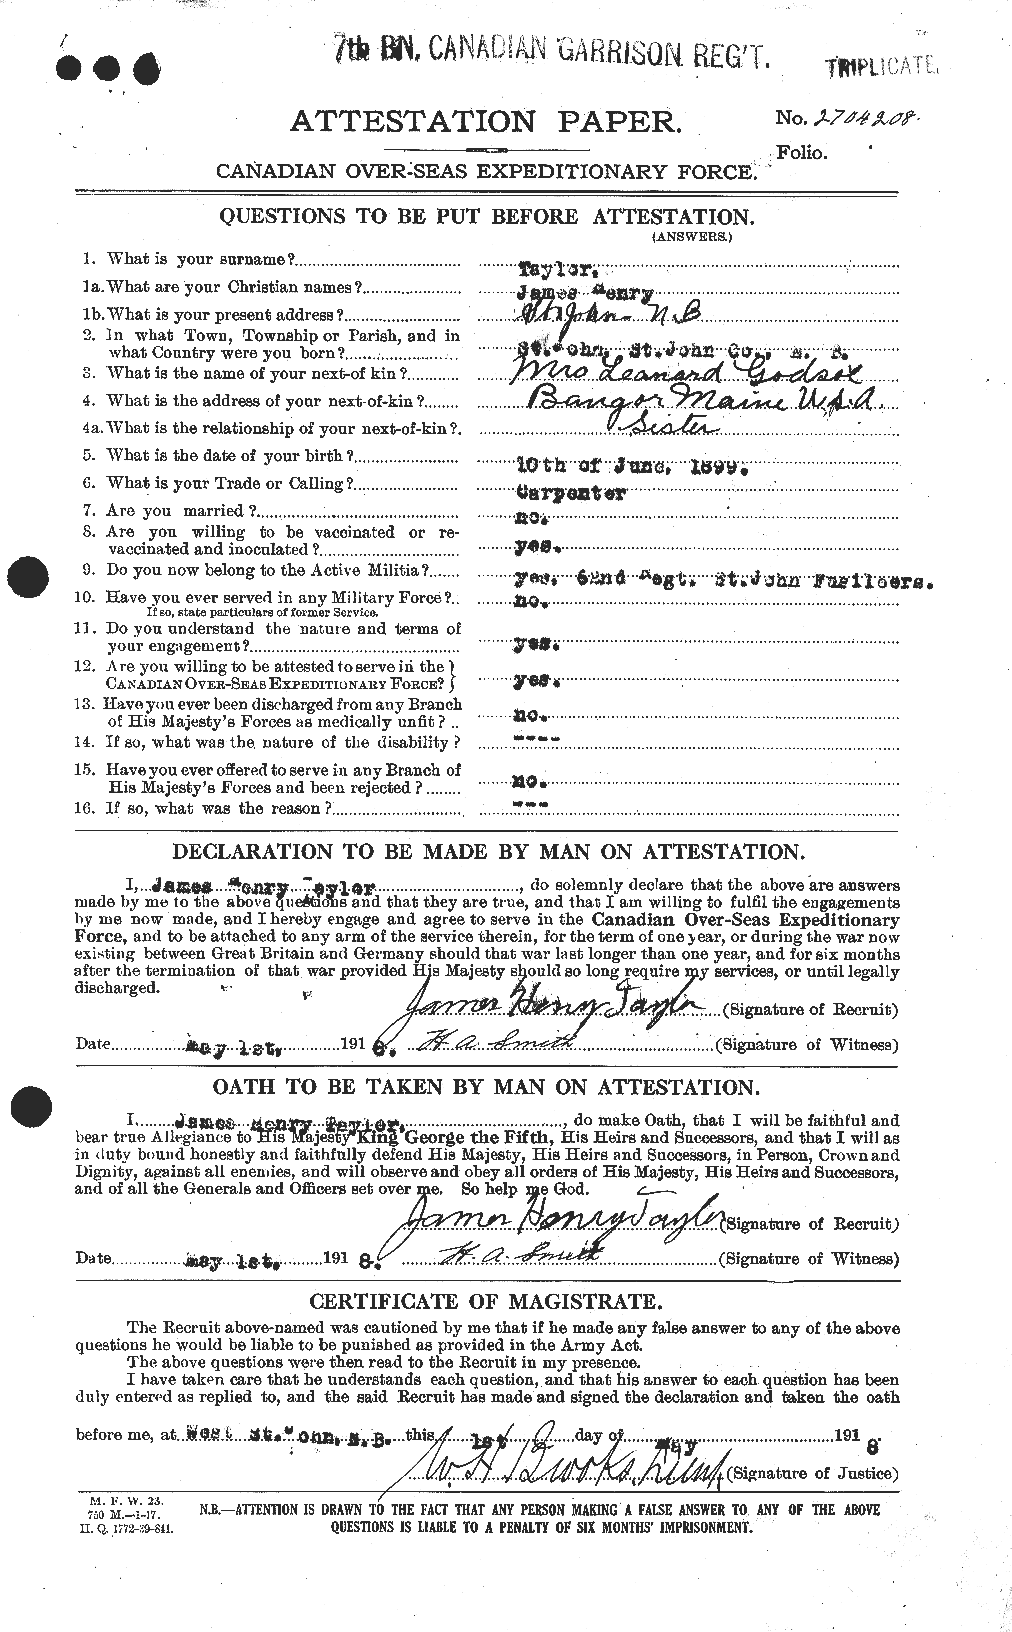 Dossiers du Personnel de la Première Guerre mondiale - CEC 626930a